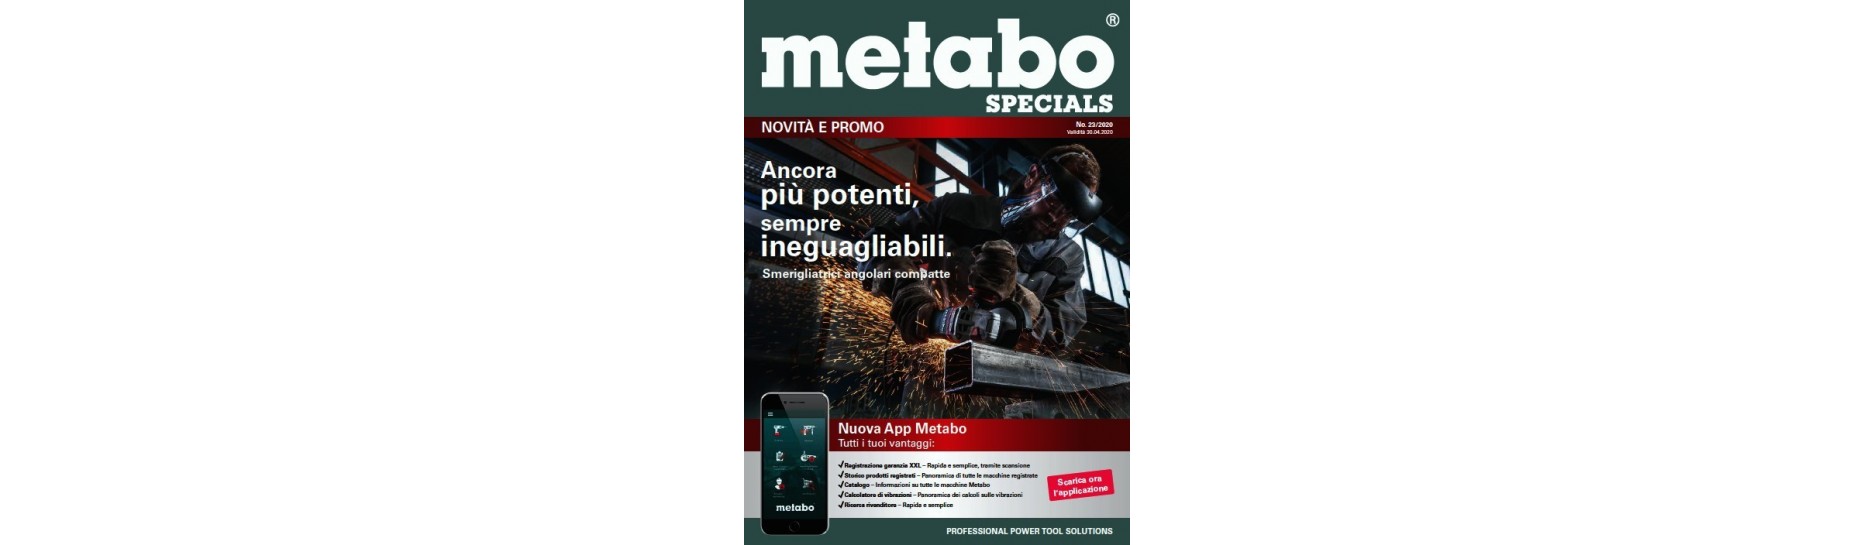 Promozioni Metabo